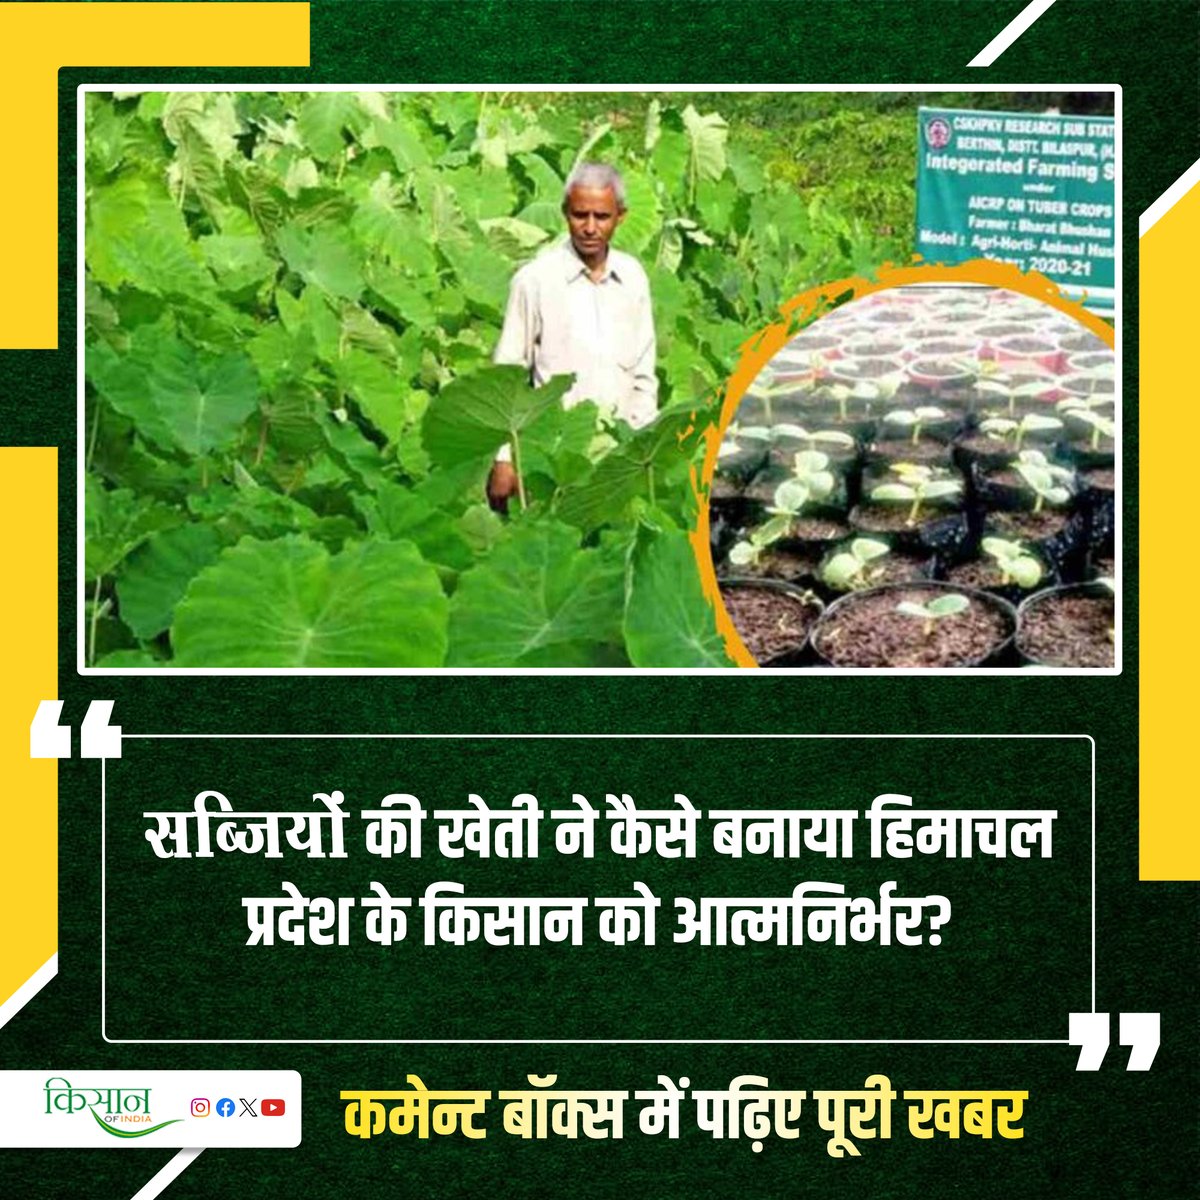 आधुनिक तकनीक के माध्यम से सब्जियों की खेती किसानों के लिए अधिक फ़ायदेमंद 

#KisanOfIndia #Agriculture #ViralStory #VegetableFarming #HimachalPradesh #atmanirbharKisan